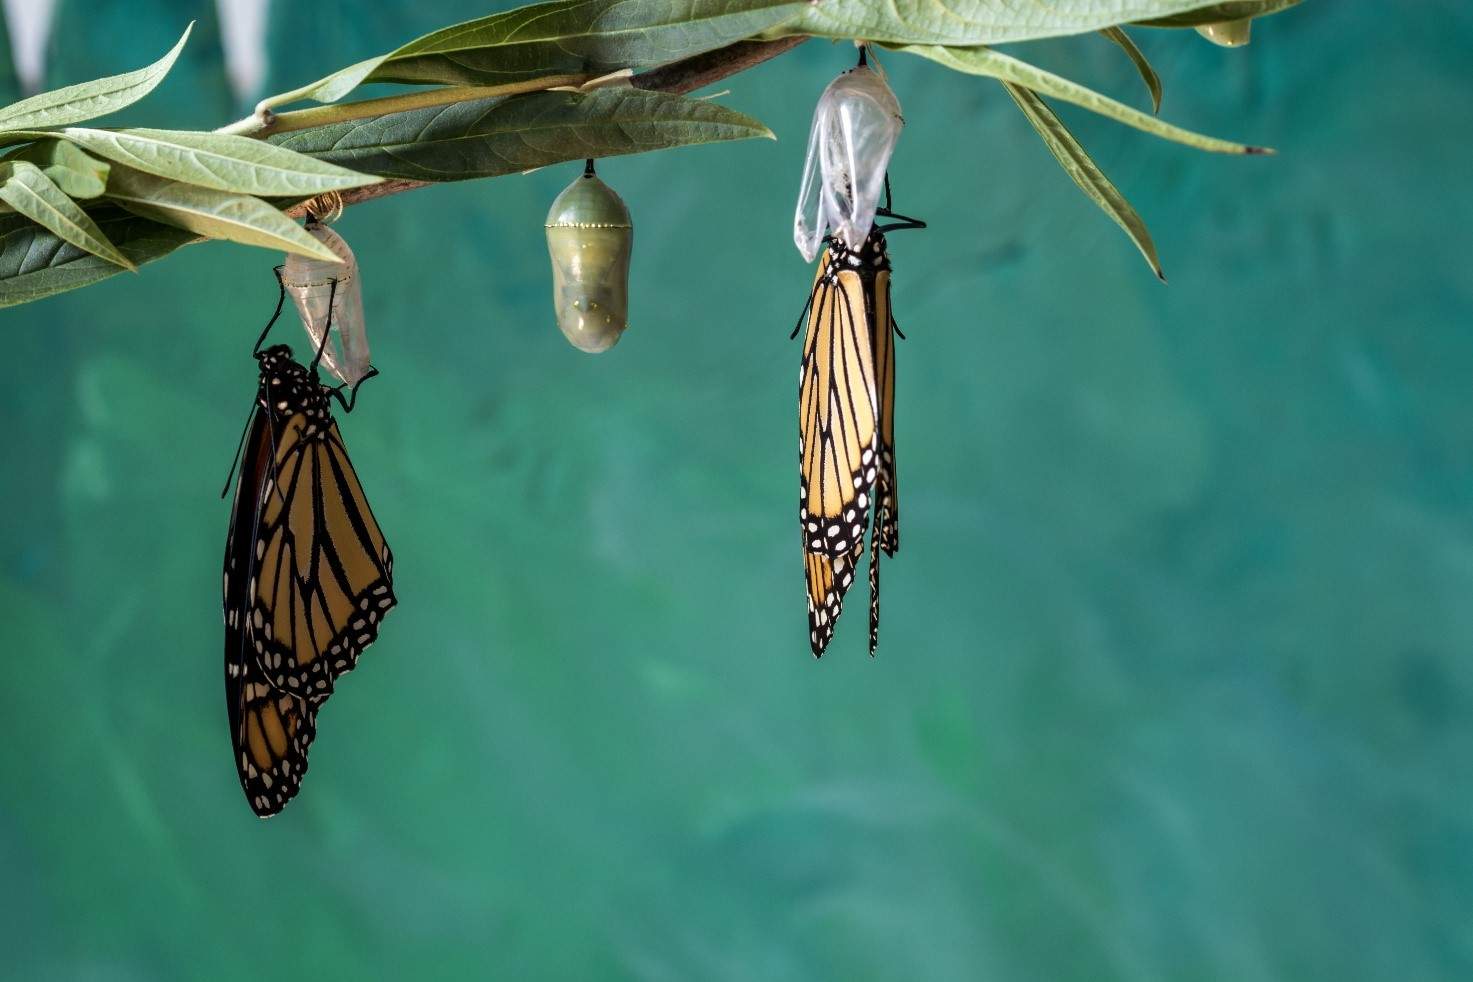 “Le organizzazioni a caccia di farfalle”: riflessioni sulla terza metafora emersa dal nostro sondaggio